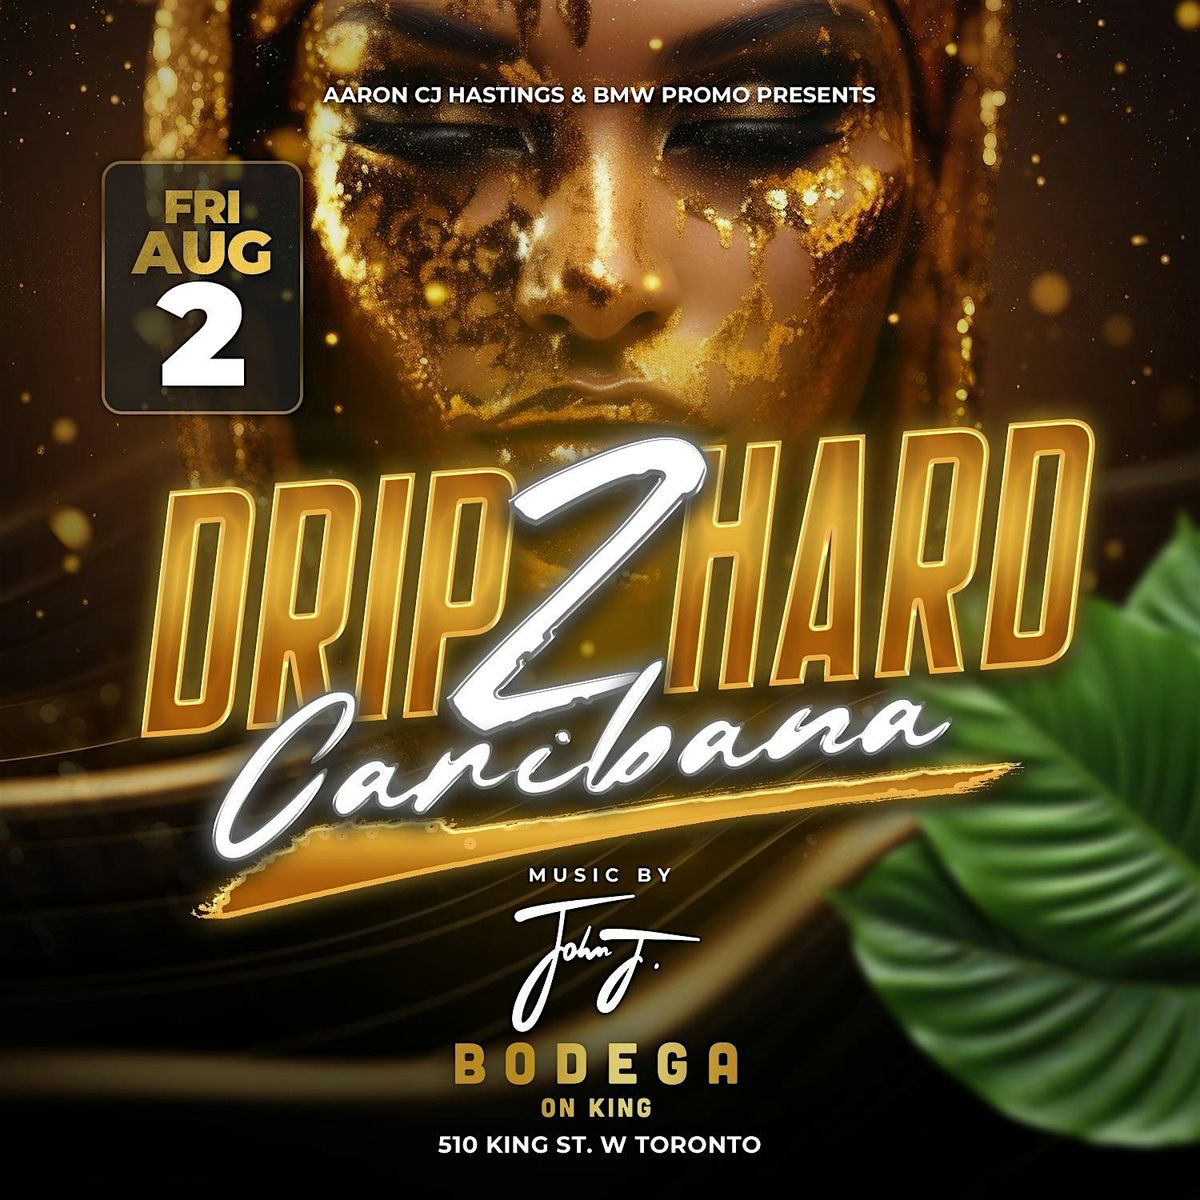 DRIP 2 HARD CARIBANA FRIDAY